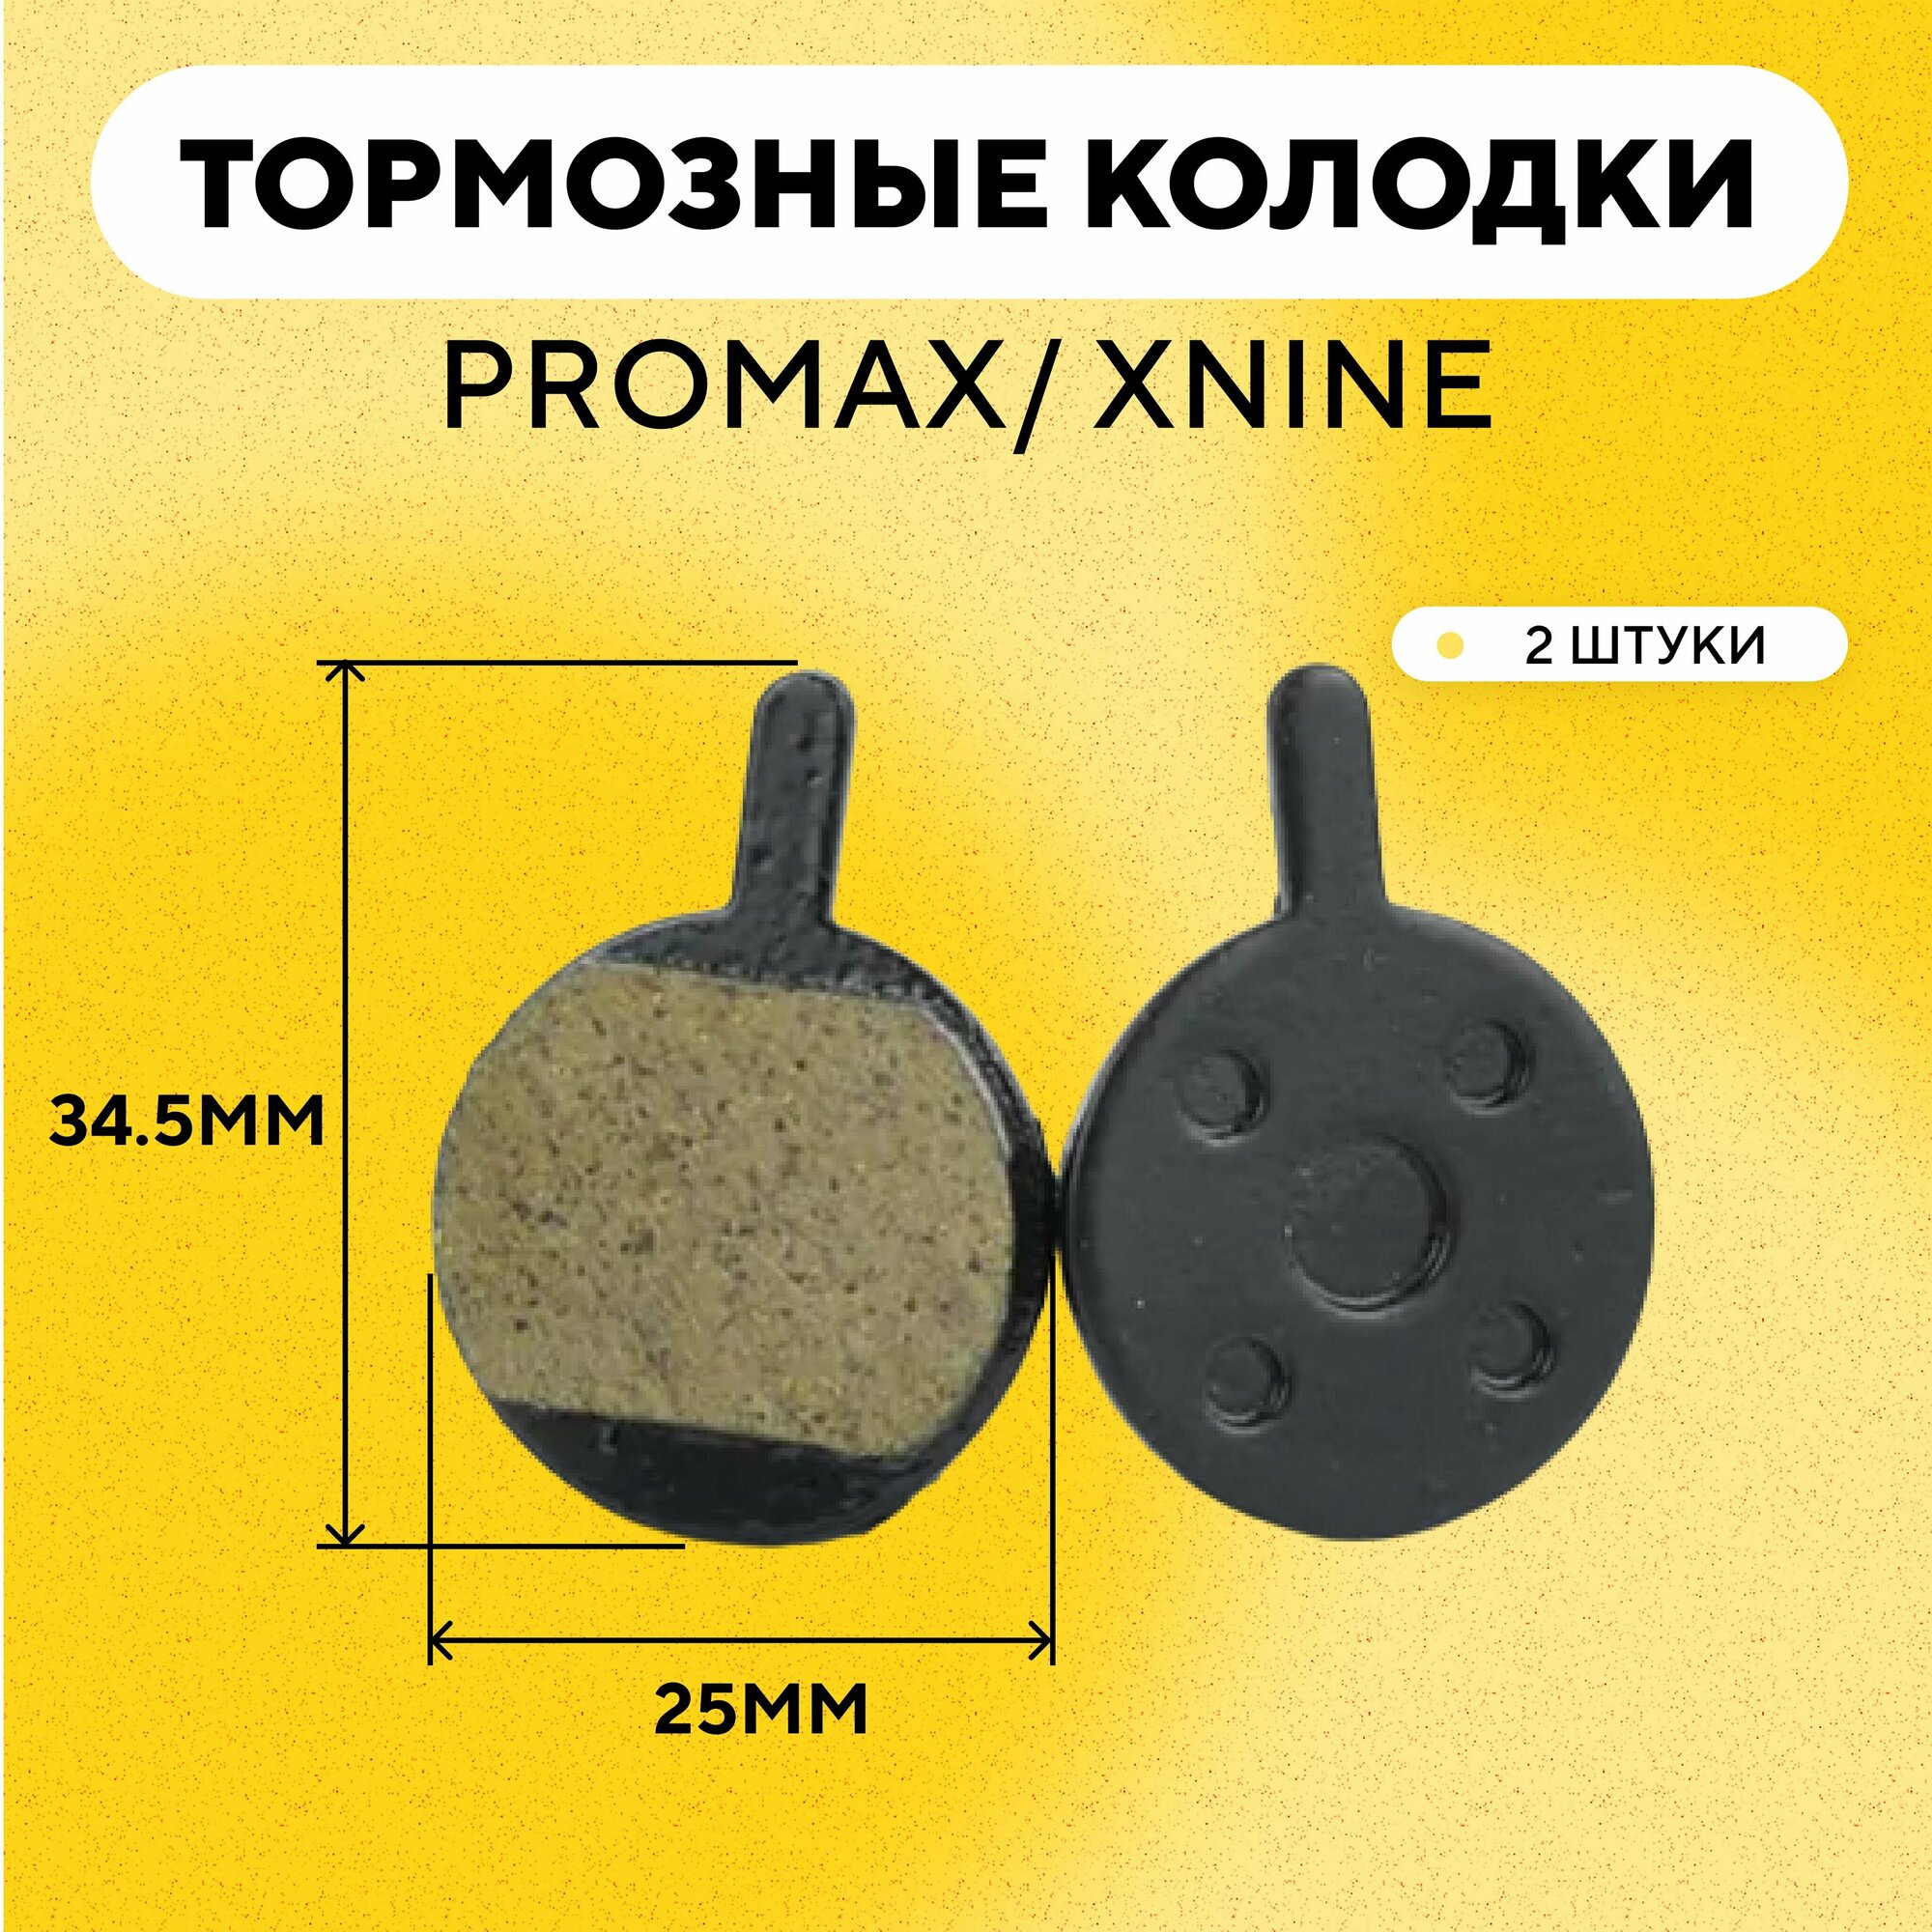 Тормозные колодки для тормозов Promax/ XNine велосипеда (большие круглые, диаметр 25 мм) G-033